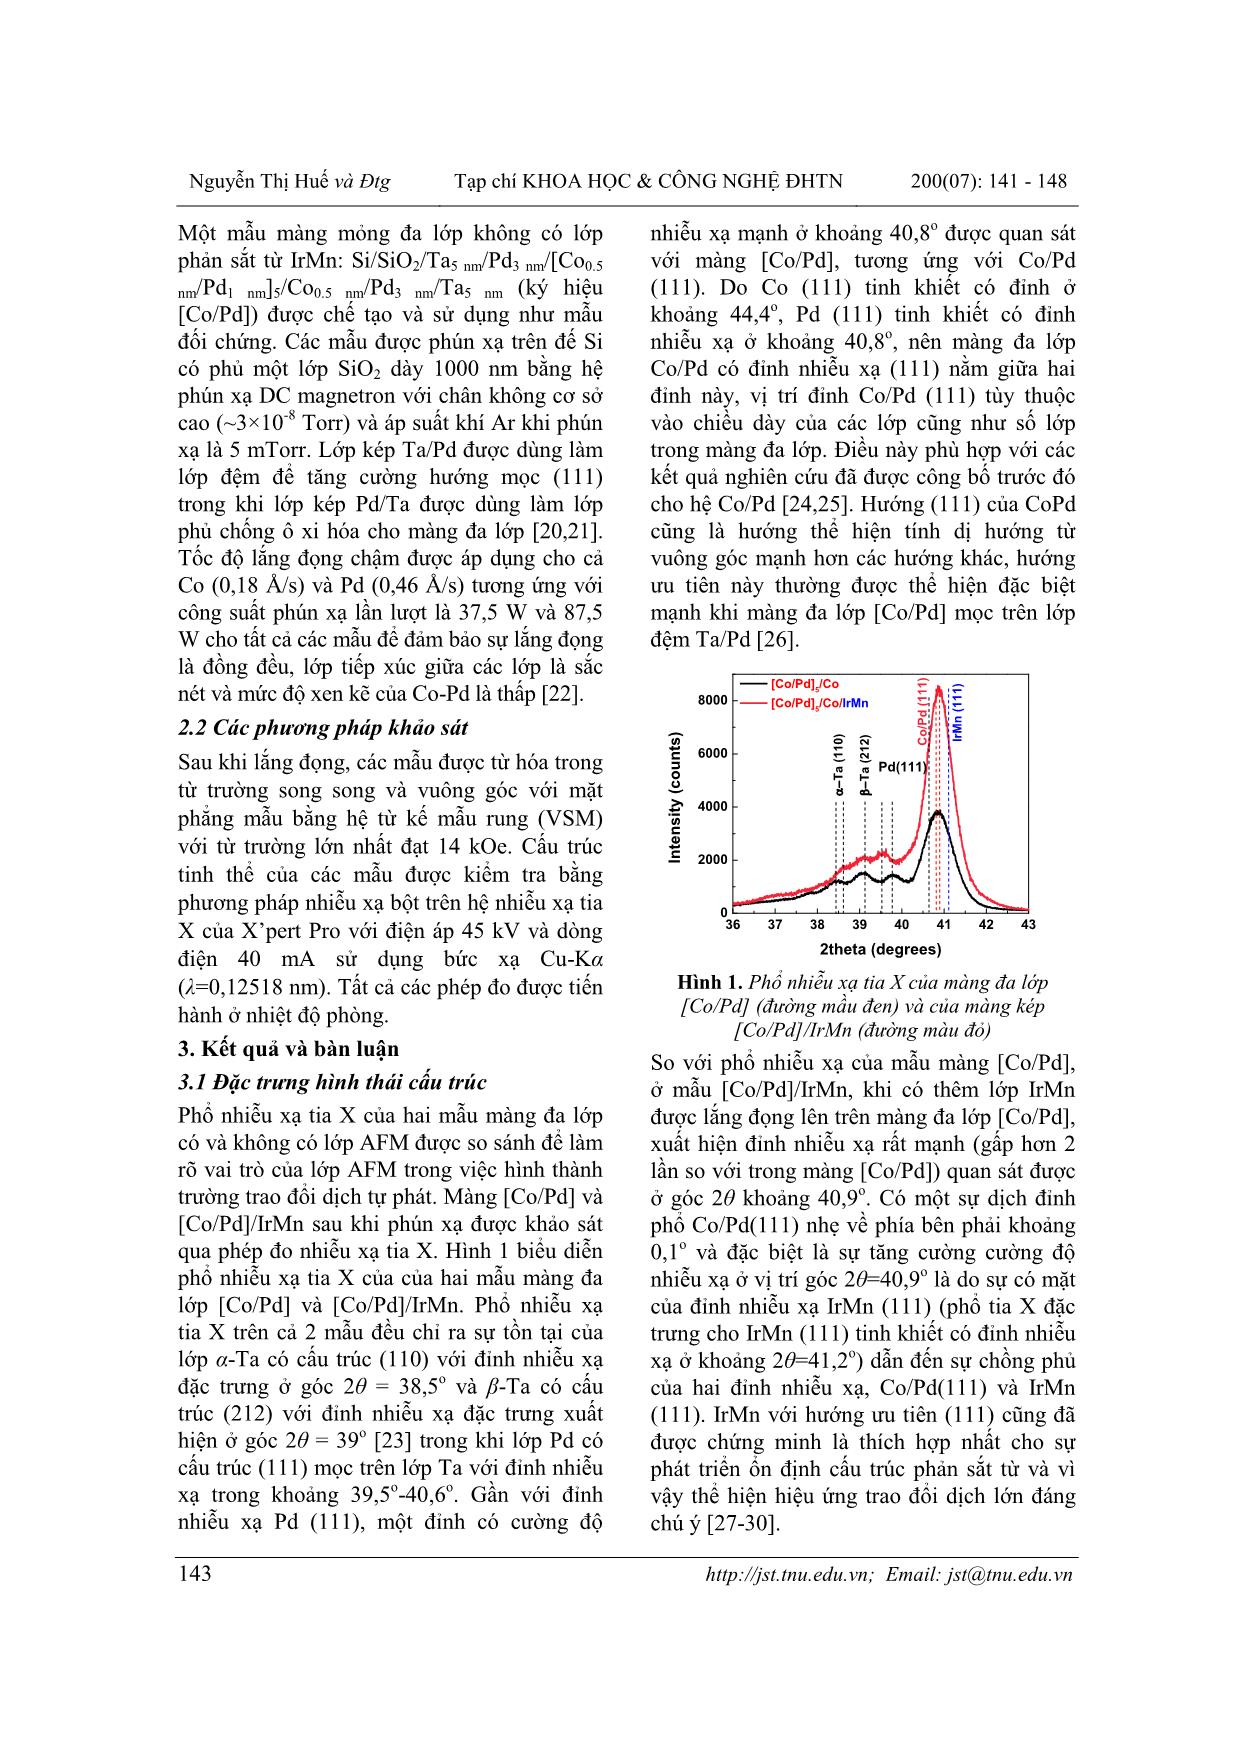 Điều biến trường trao đổi dịch và lực kháng từ theo phương vuông góc trong màng đa lớp [co/pd]/irmn trang 3